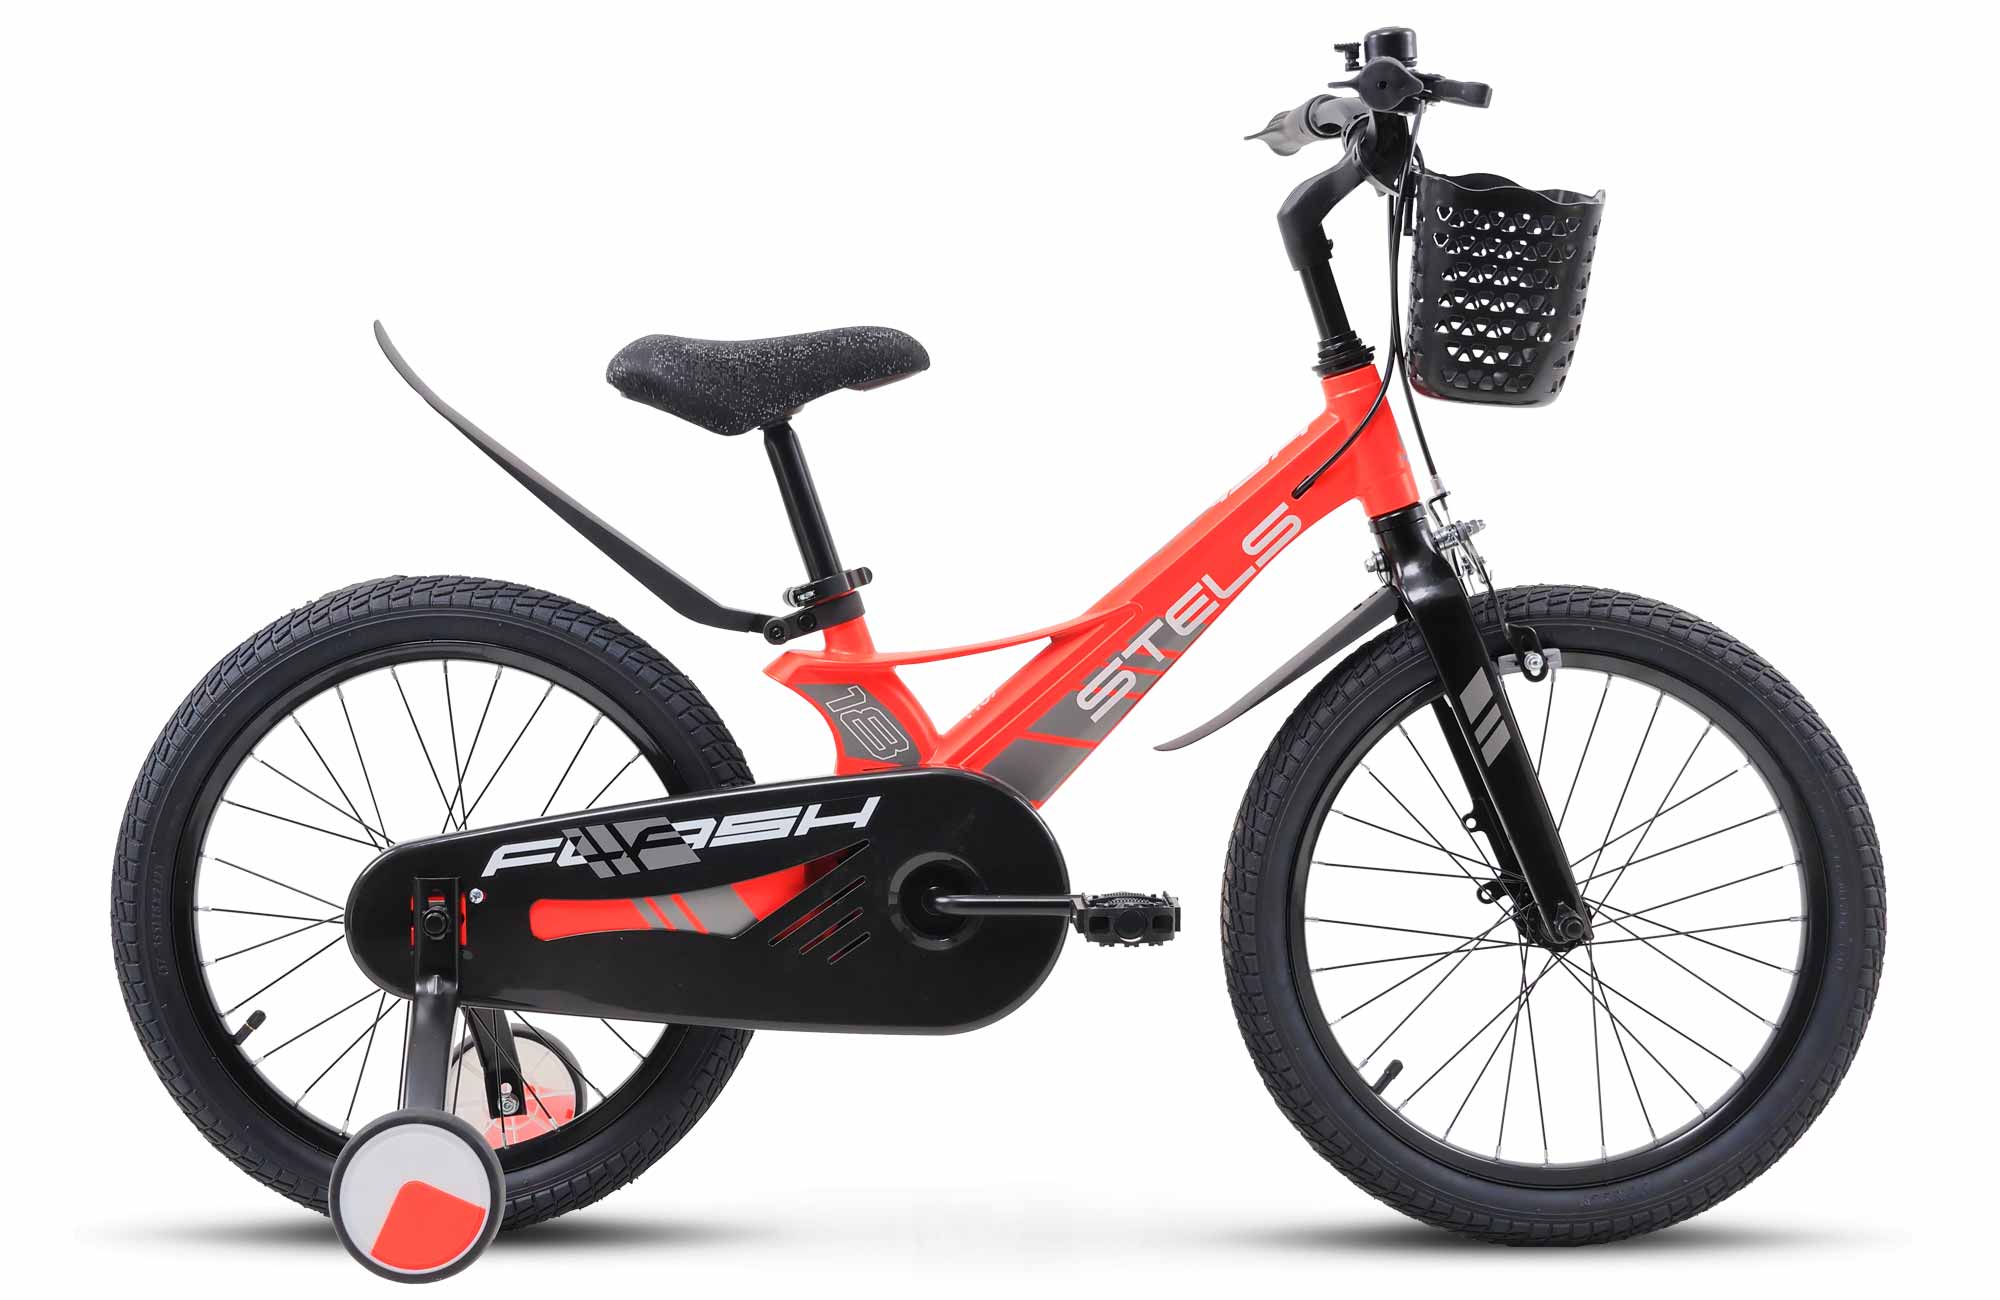 Детский велосипед STELS Flash KR 18 Z010 91 Красный, с дополнительными колесами велосипед детский двухколесный stels 16 jet z010